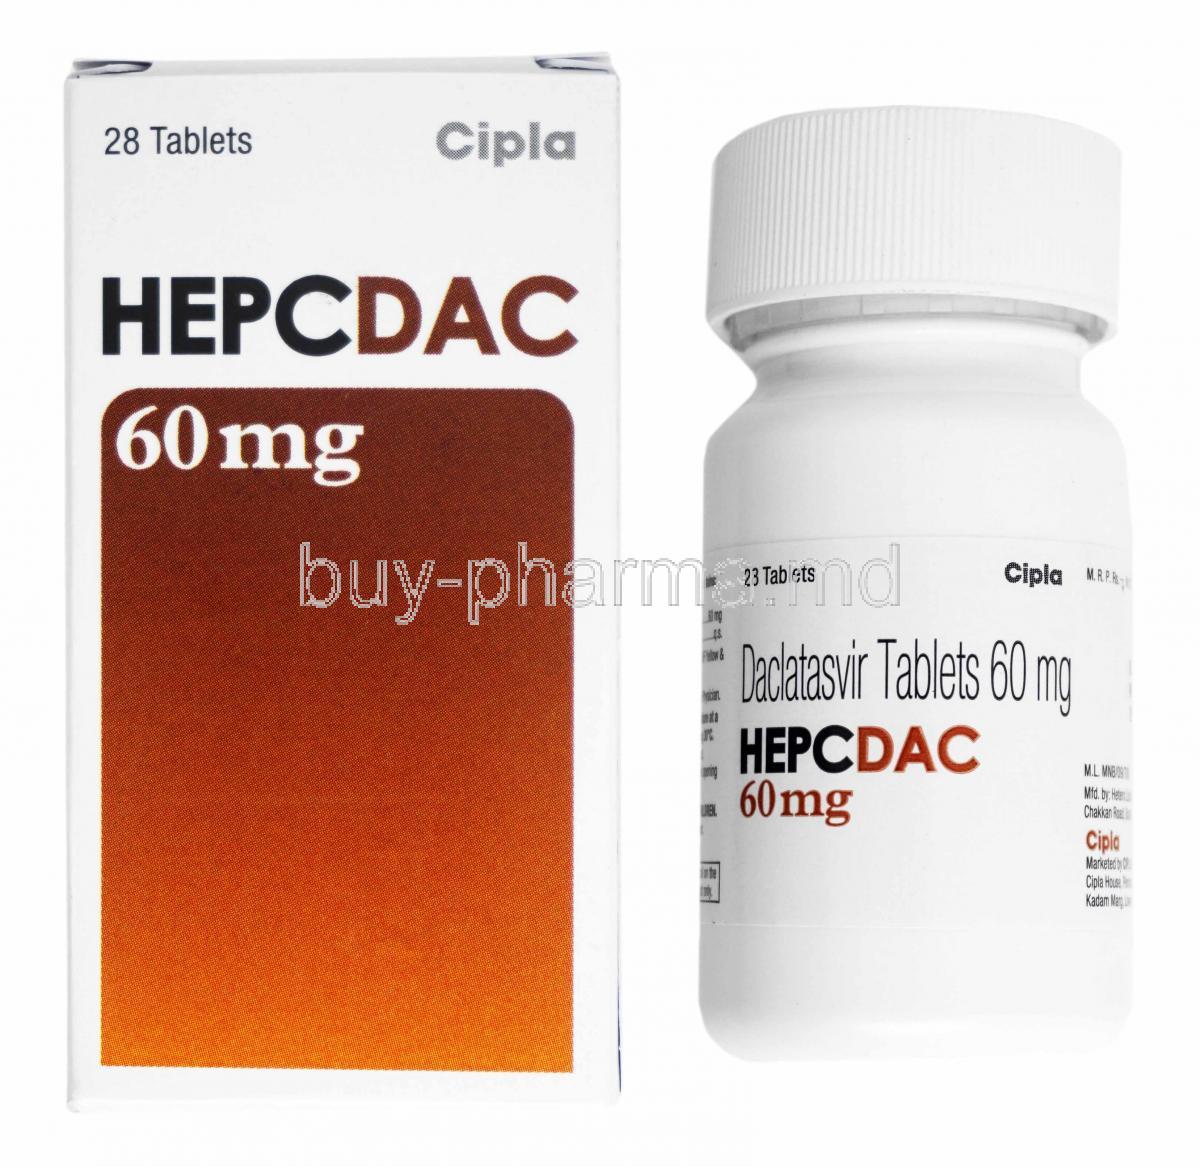 Hepcdac, Daclatasvir 60mg box and bottle